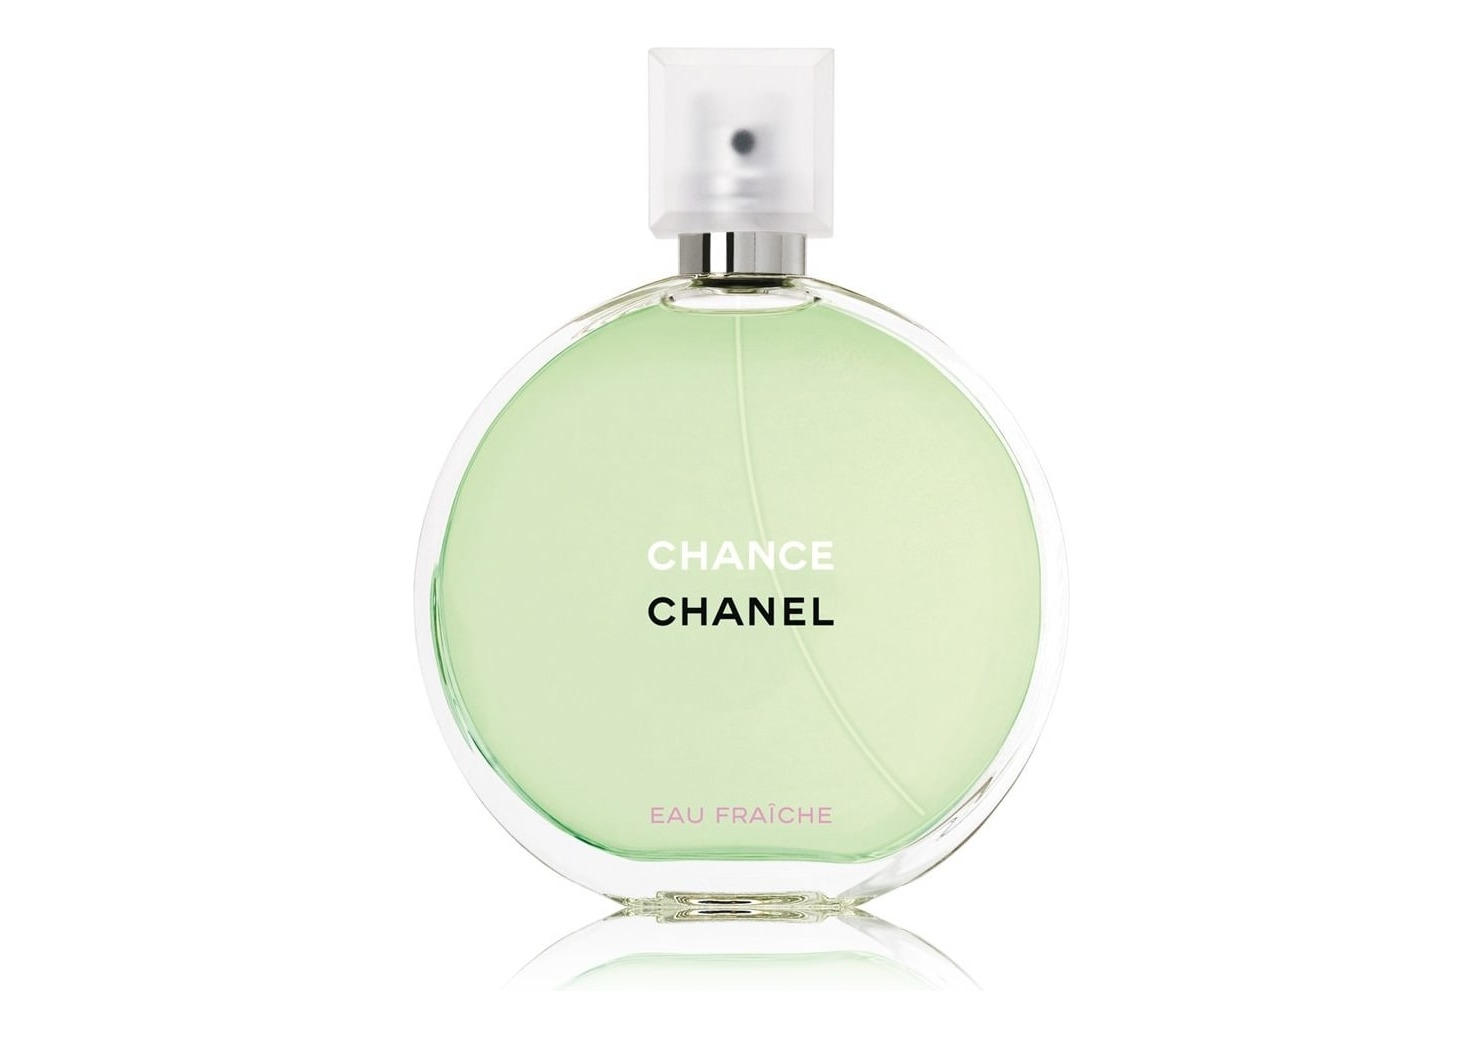 Chanel Coco Noir  купить в Москве женские духи парфюмерная и туалетная  вода Шанель Коко Нуар по лучшей цене в интернетмагазине Randewoo